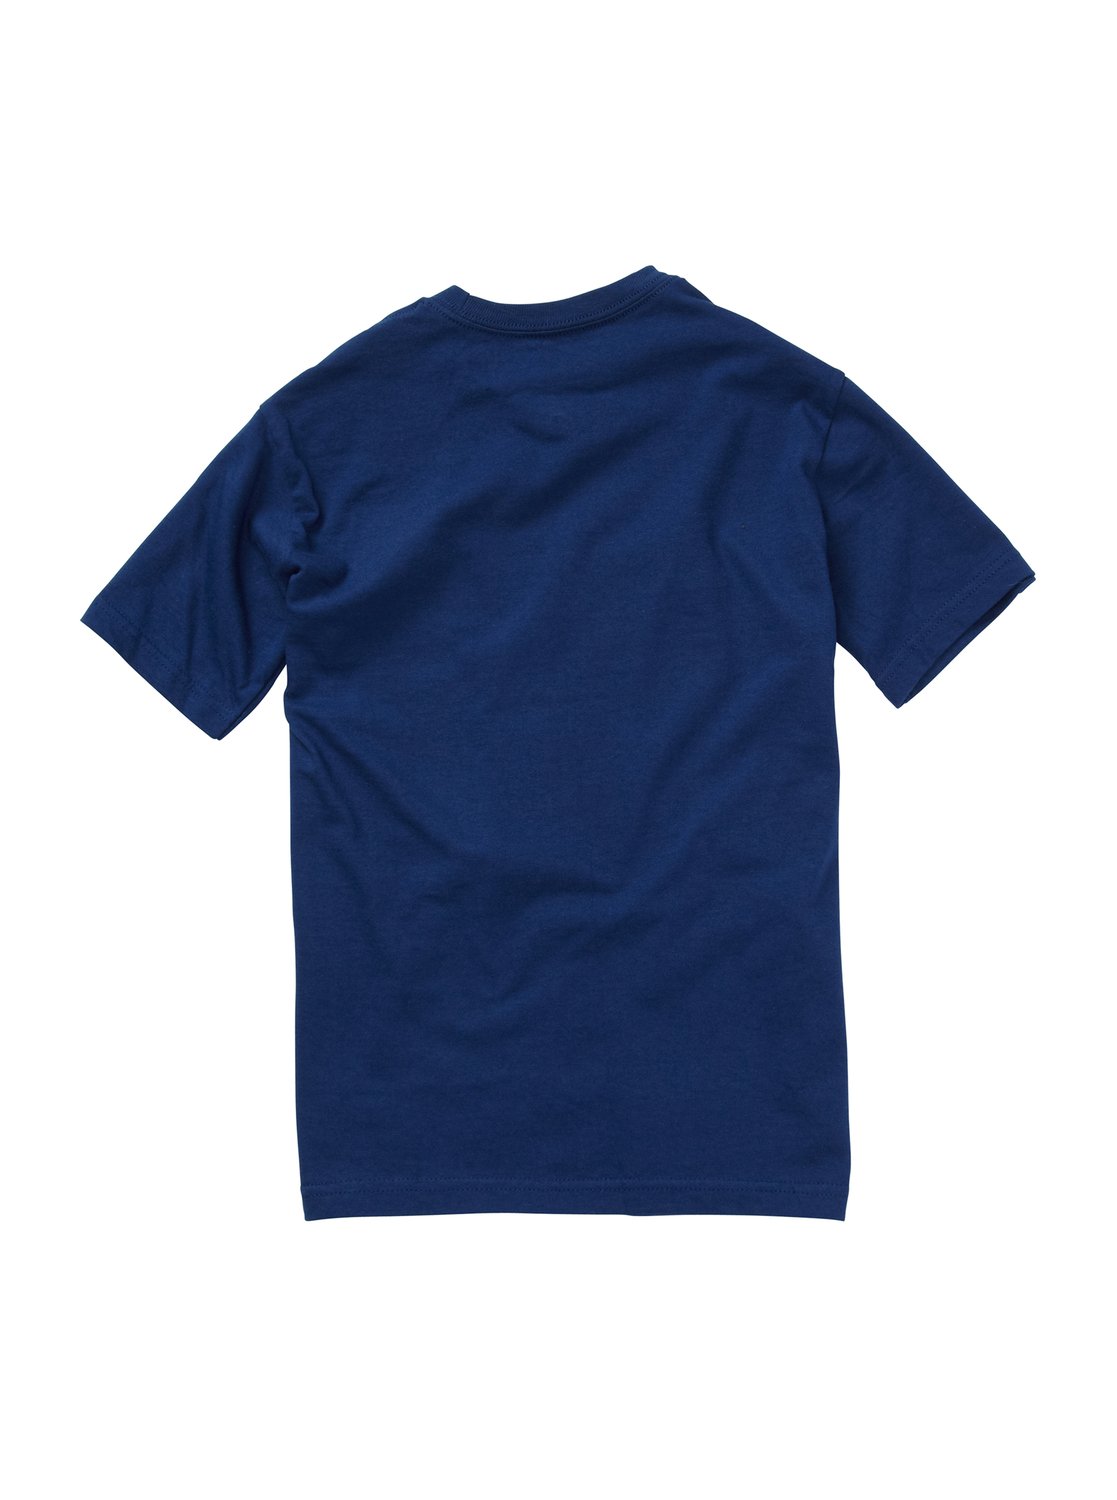 Boys 2-7 Lopsided T-Shirt AQKZT00301 | Quiksilver